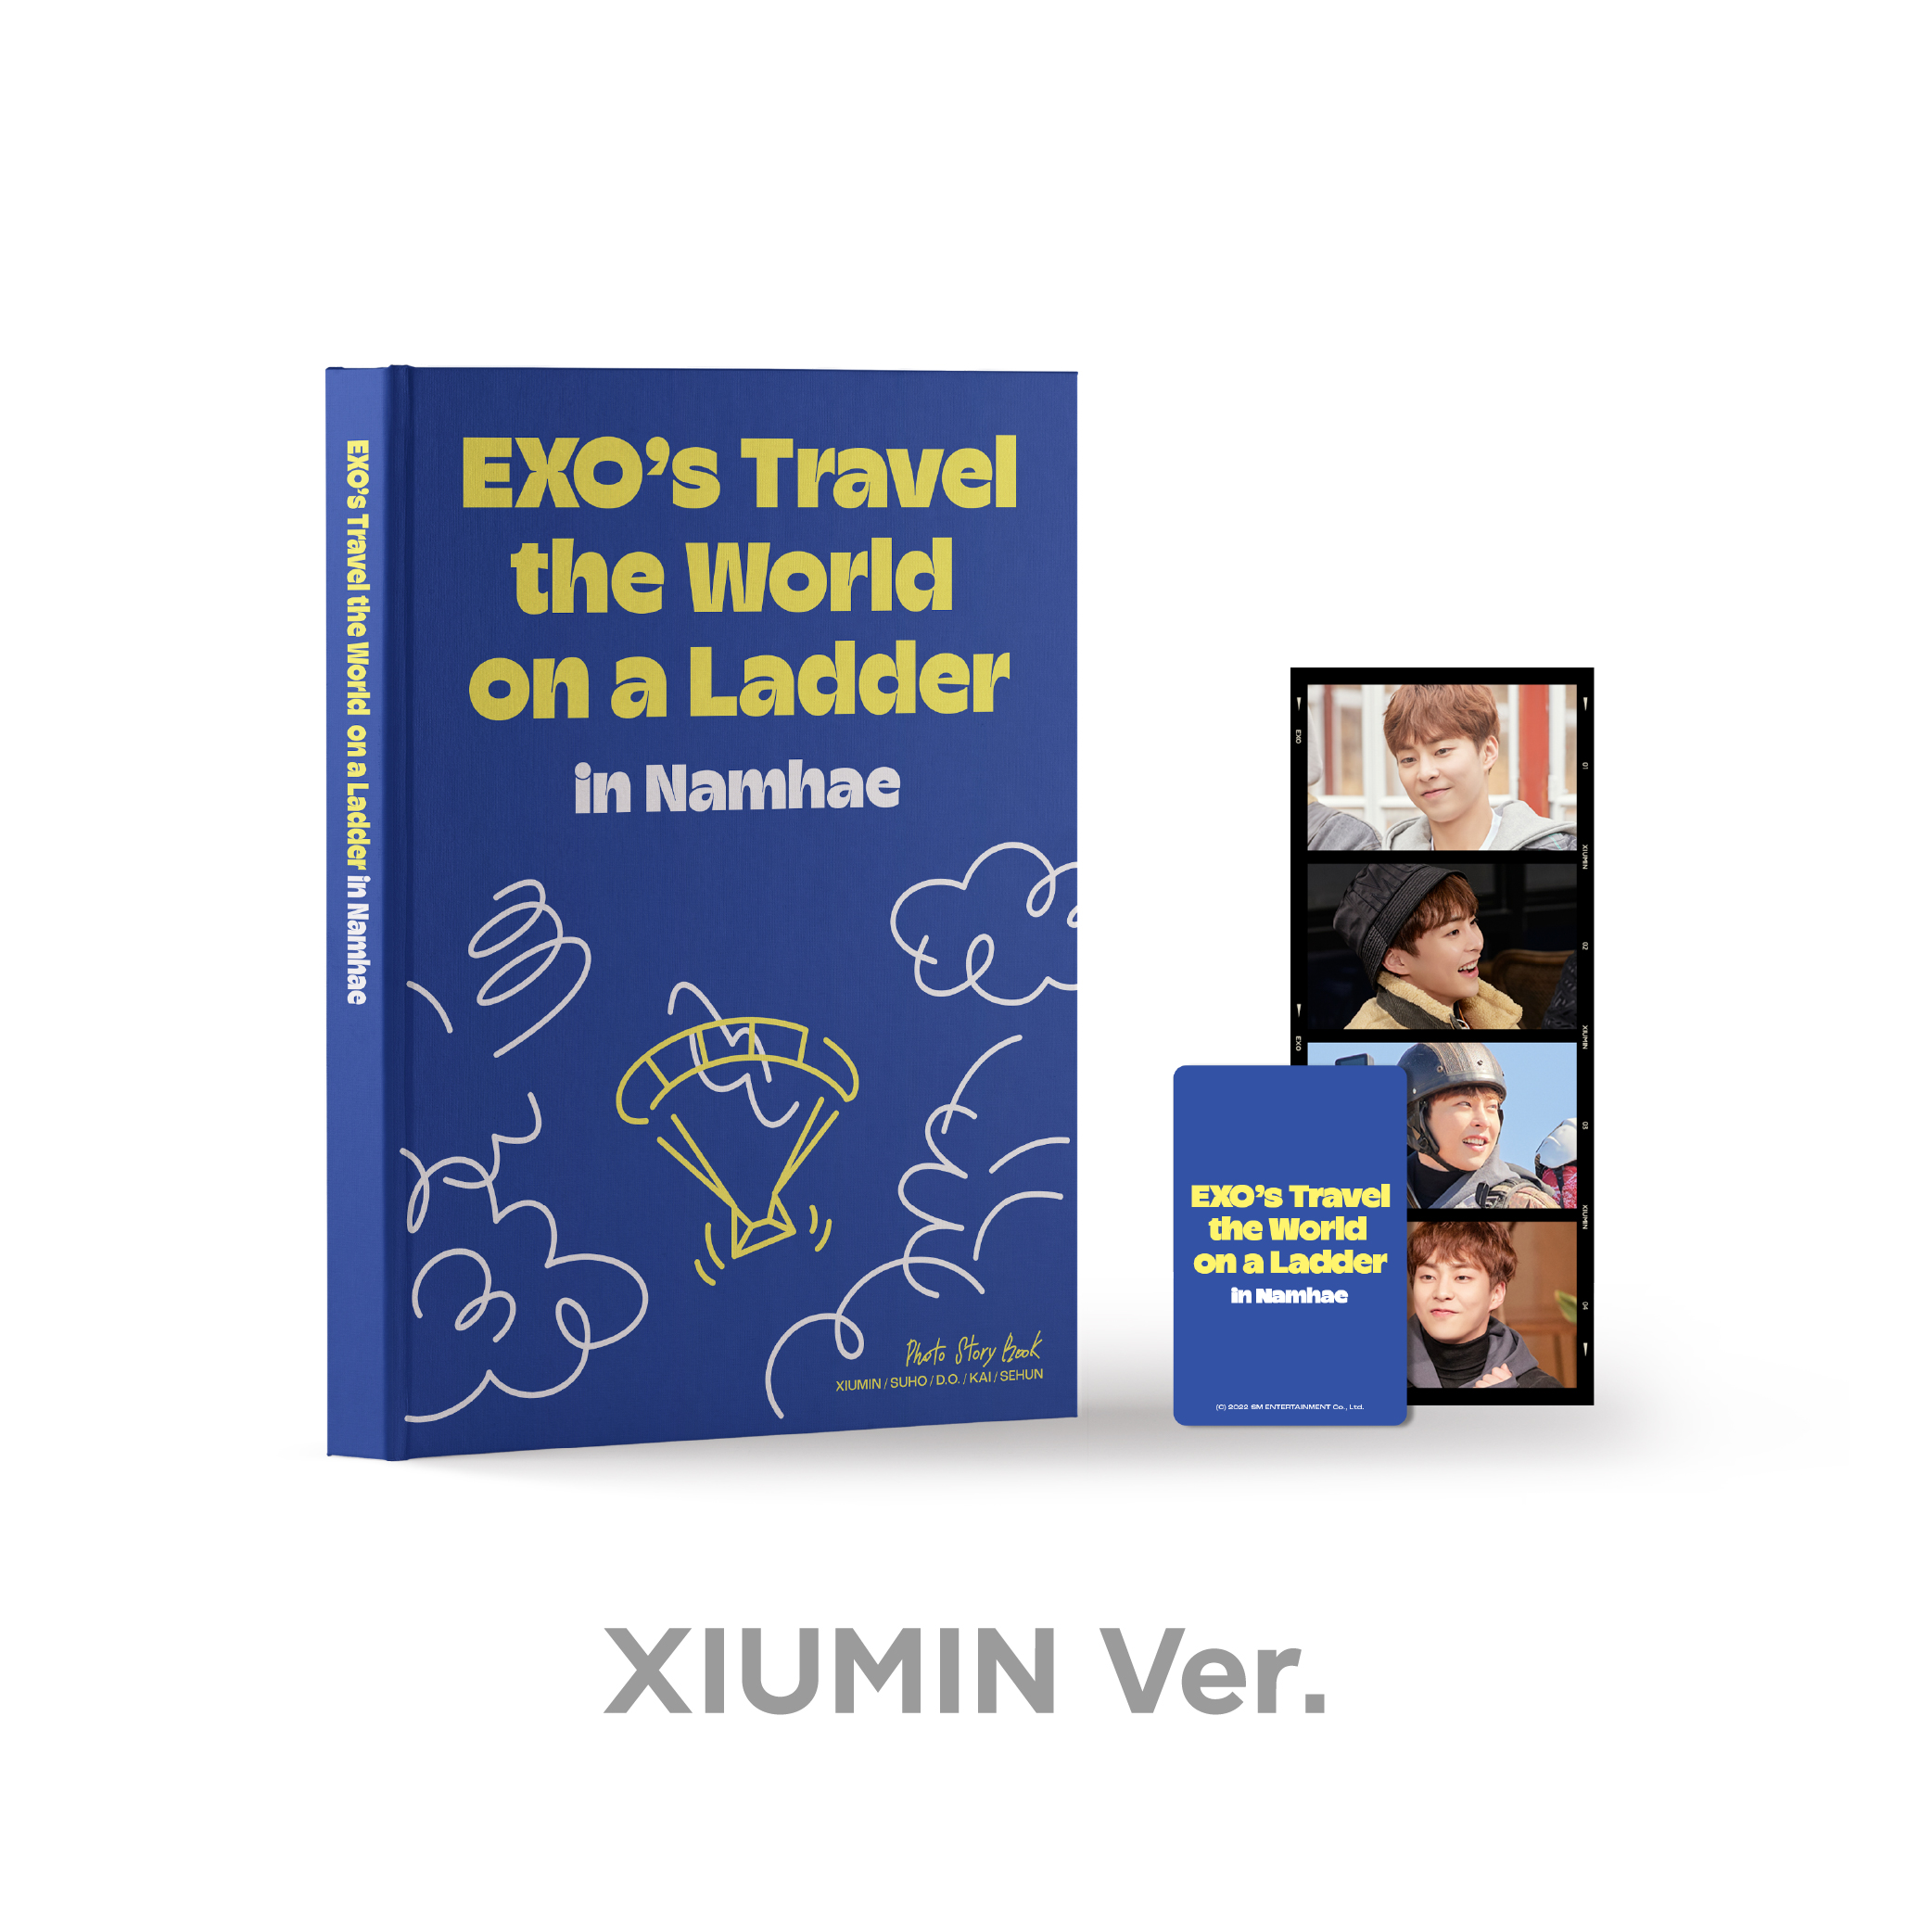 EXO(엑소) - <엑소의 사다리 타고 세계여행 - 남해 편> PHOTO STORY BOOK [XIUMIN Ver.]